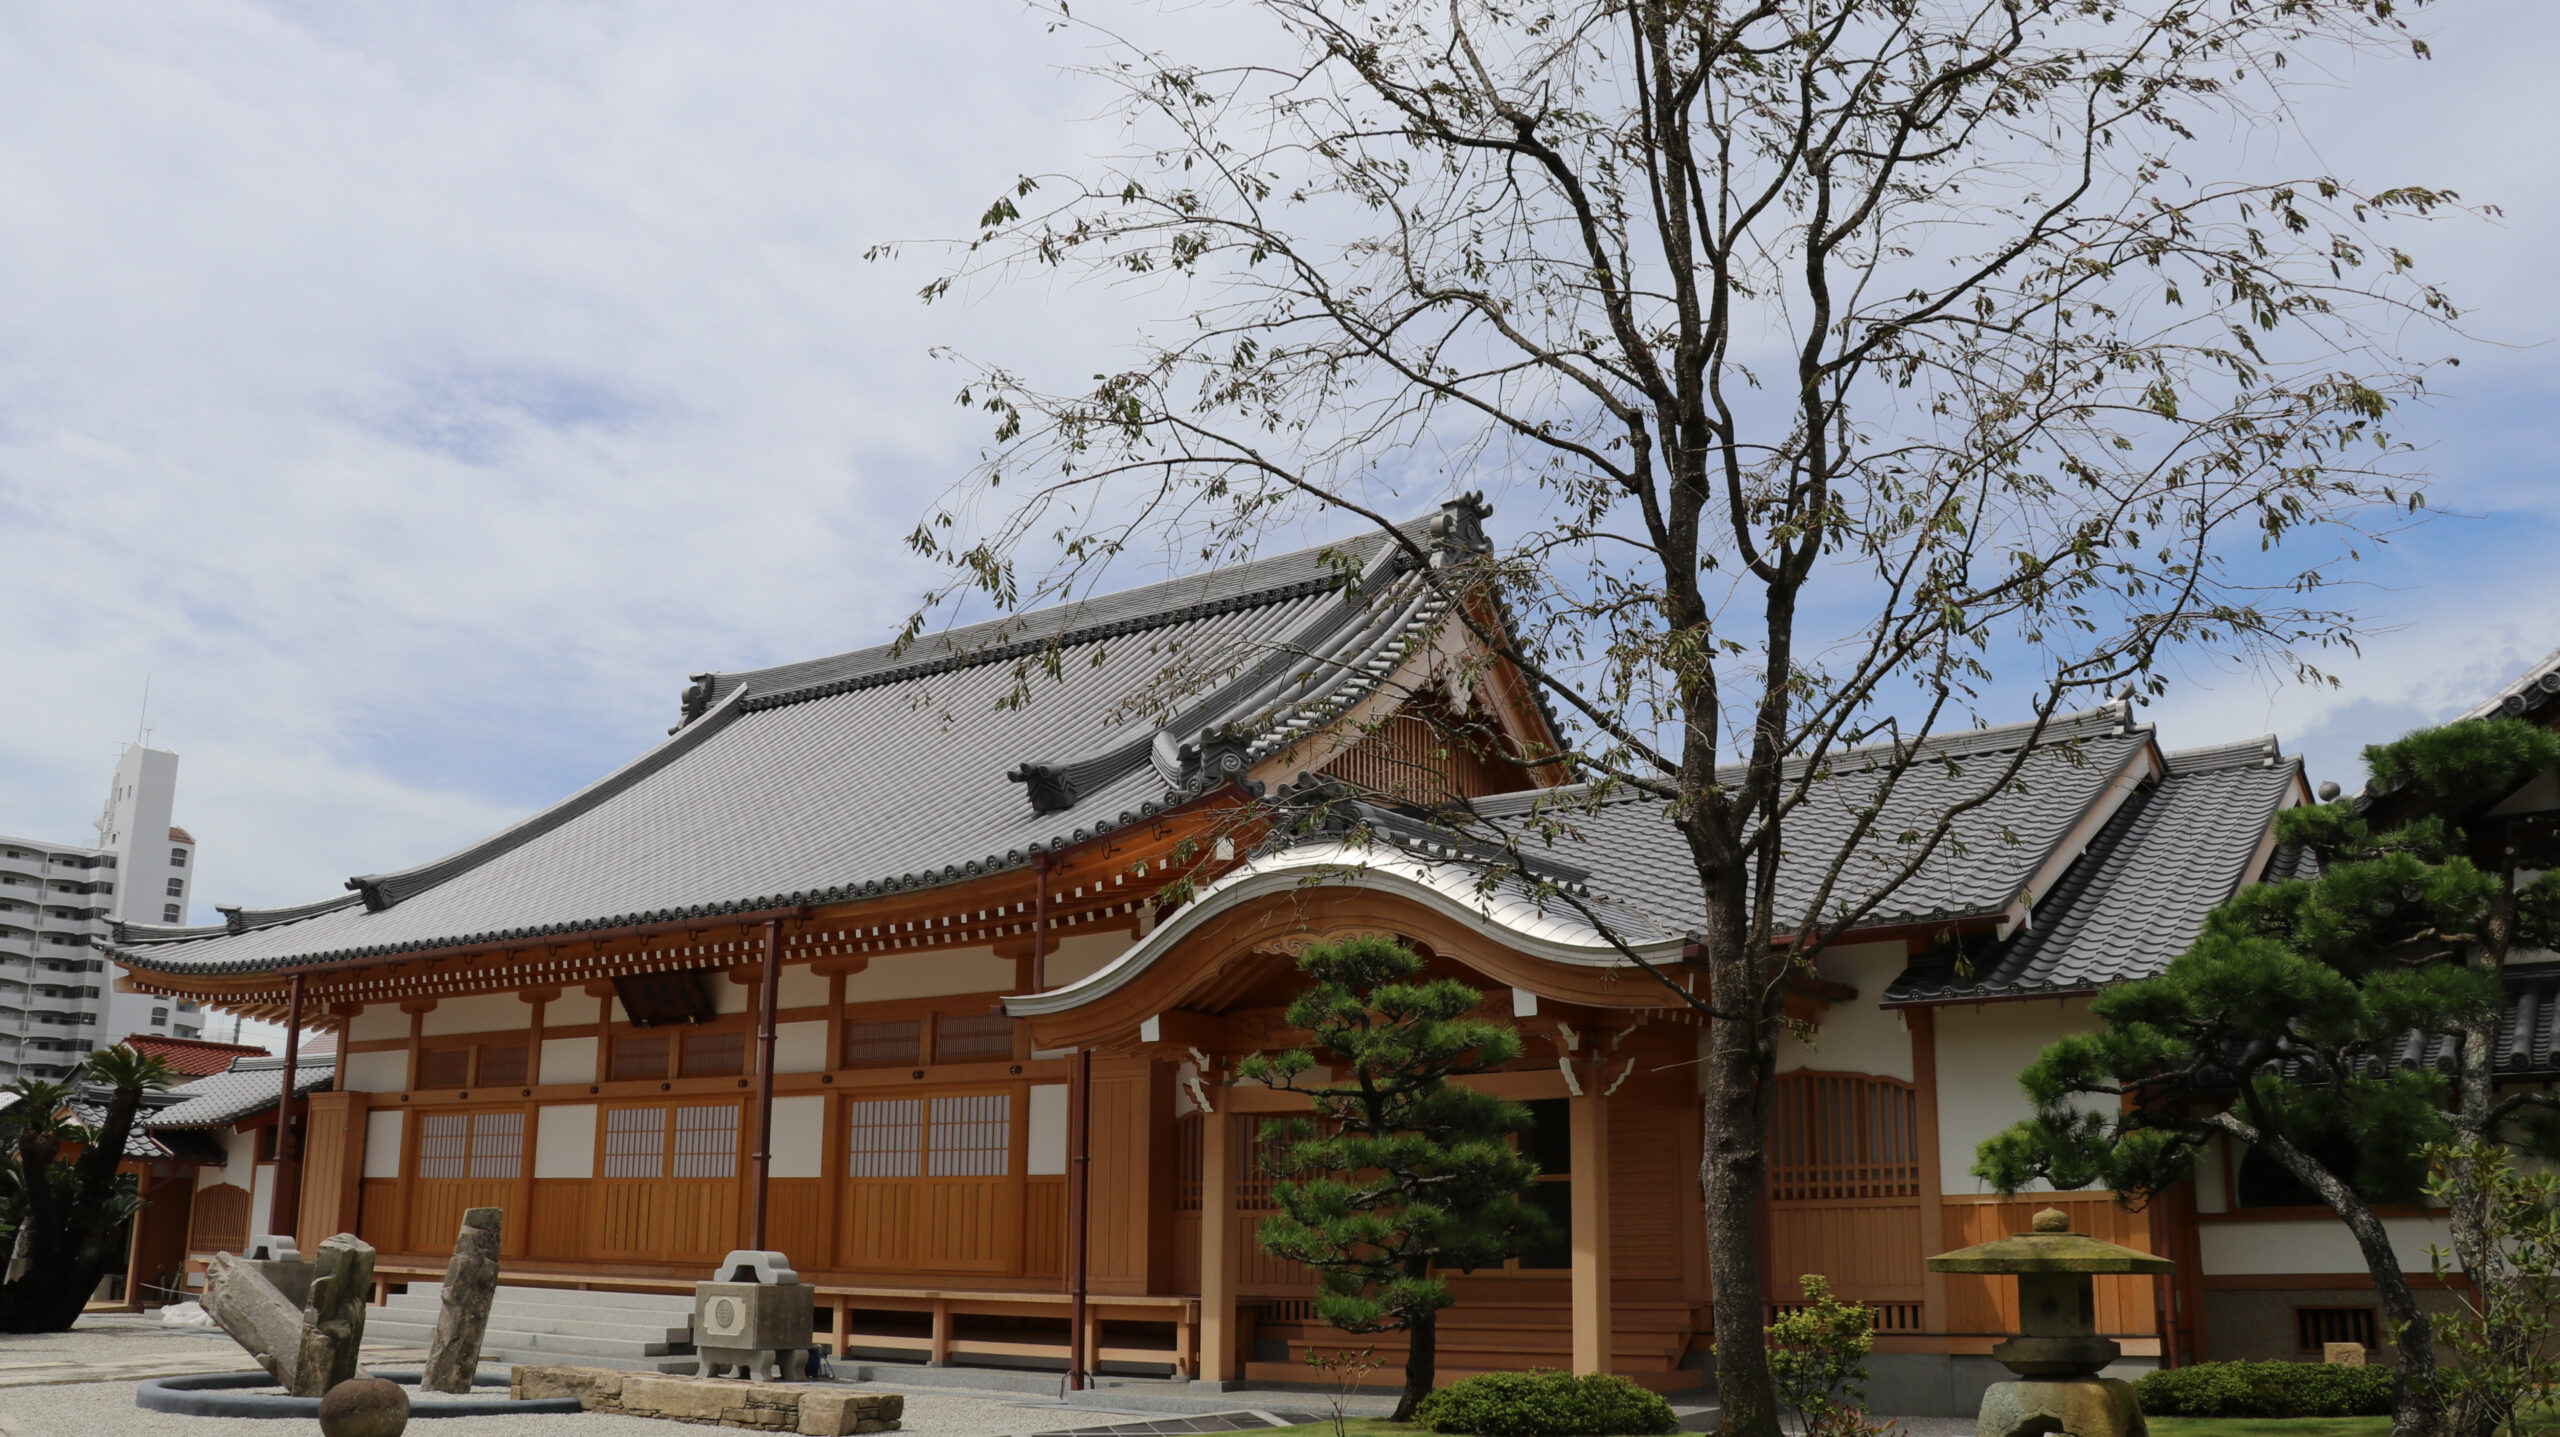 明石の禅寺 大蔵院